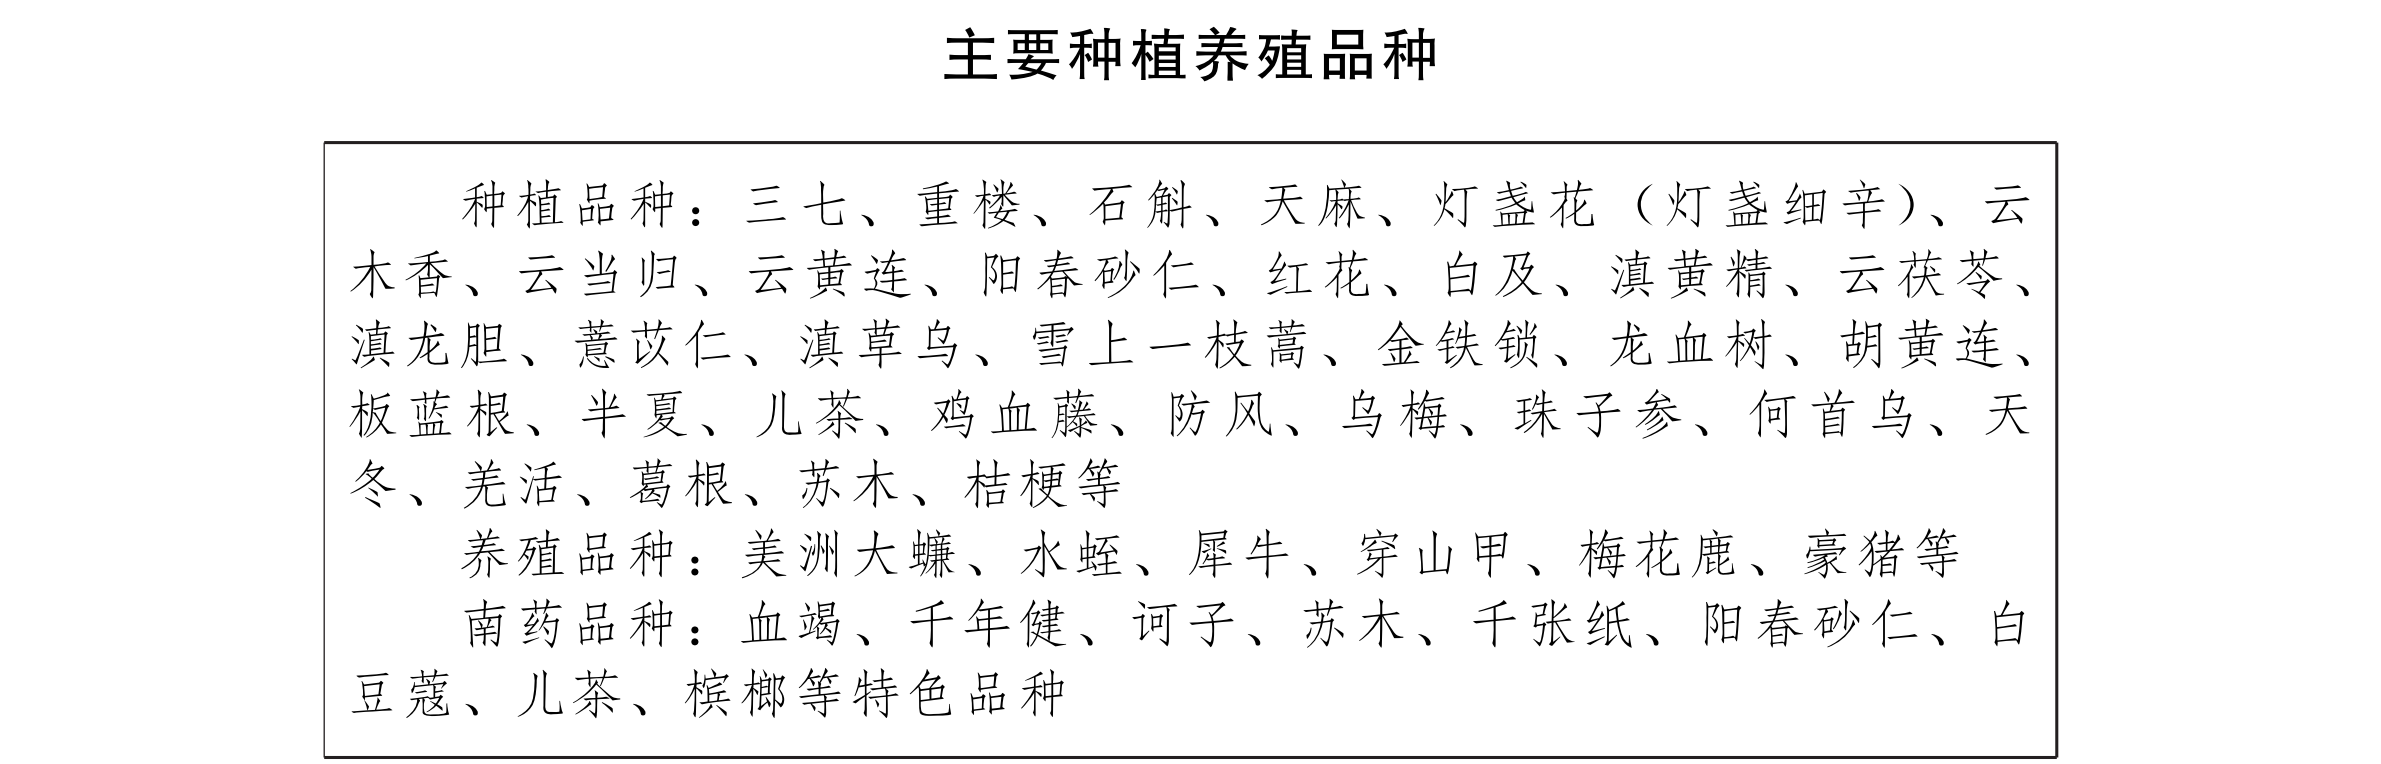 云南省人民政府办公厅关于贯彻落实中药材保护和发展规划(2015—2020年) 的实施意见_04.png